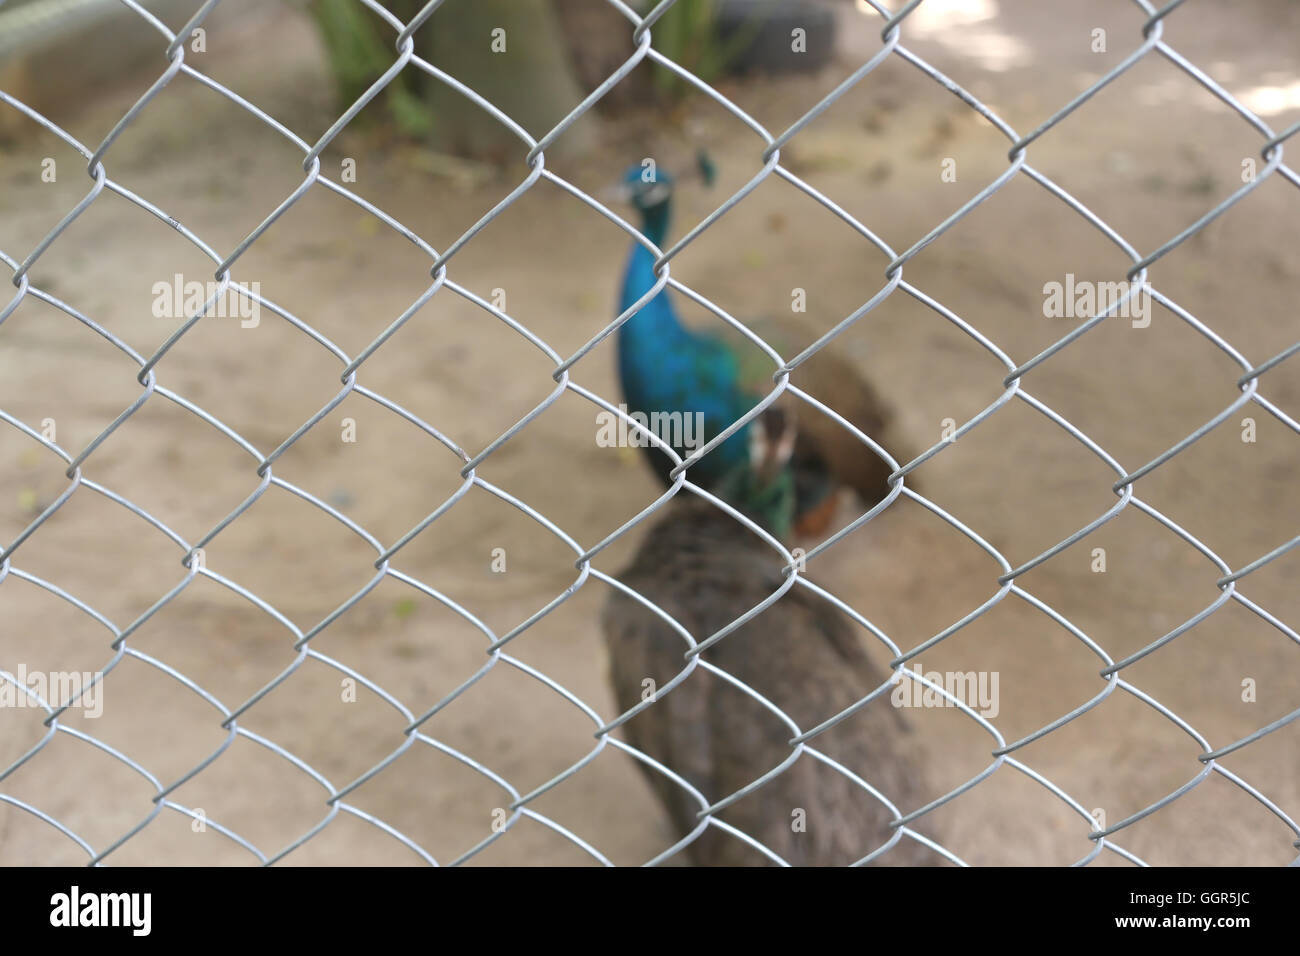 Peacock de conservar las aves se encuentran atrapados dentro de una jaula de concepto de la captura de animales silvestres. Foto de stock